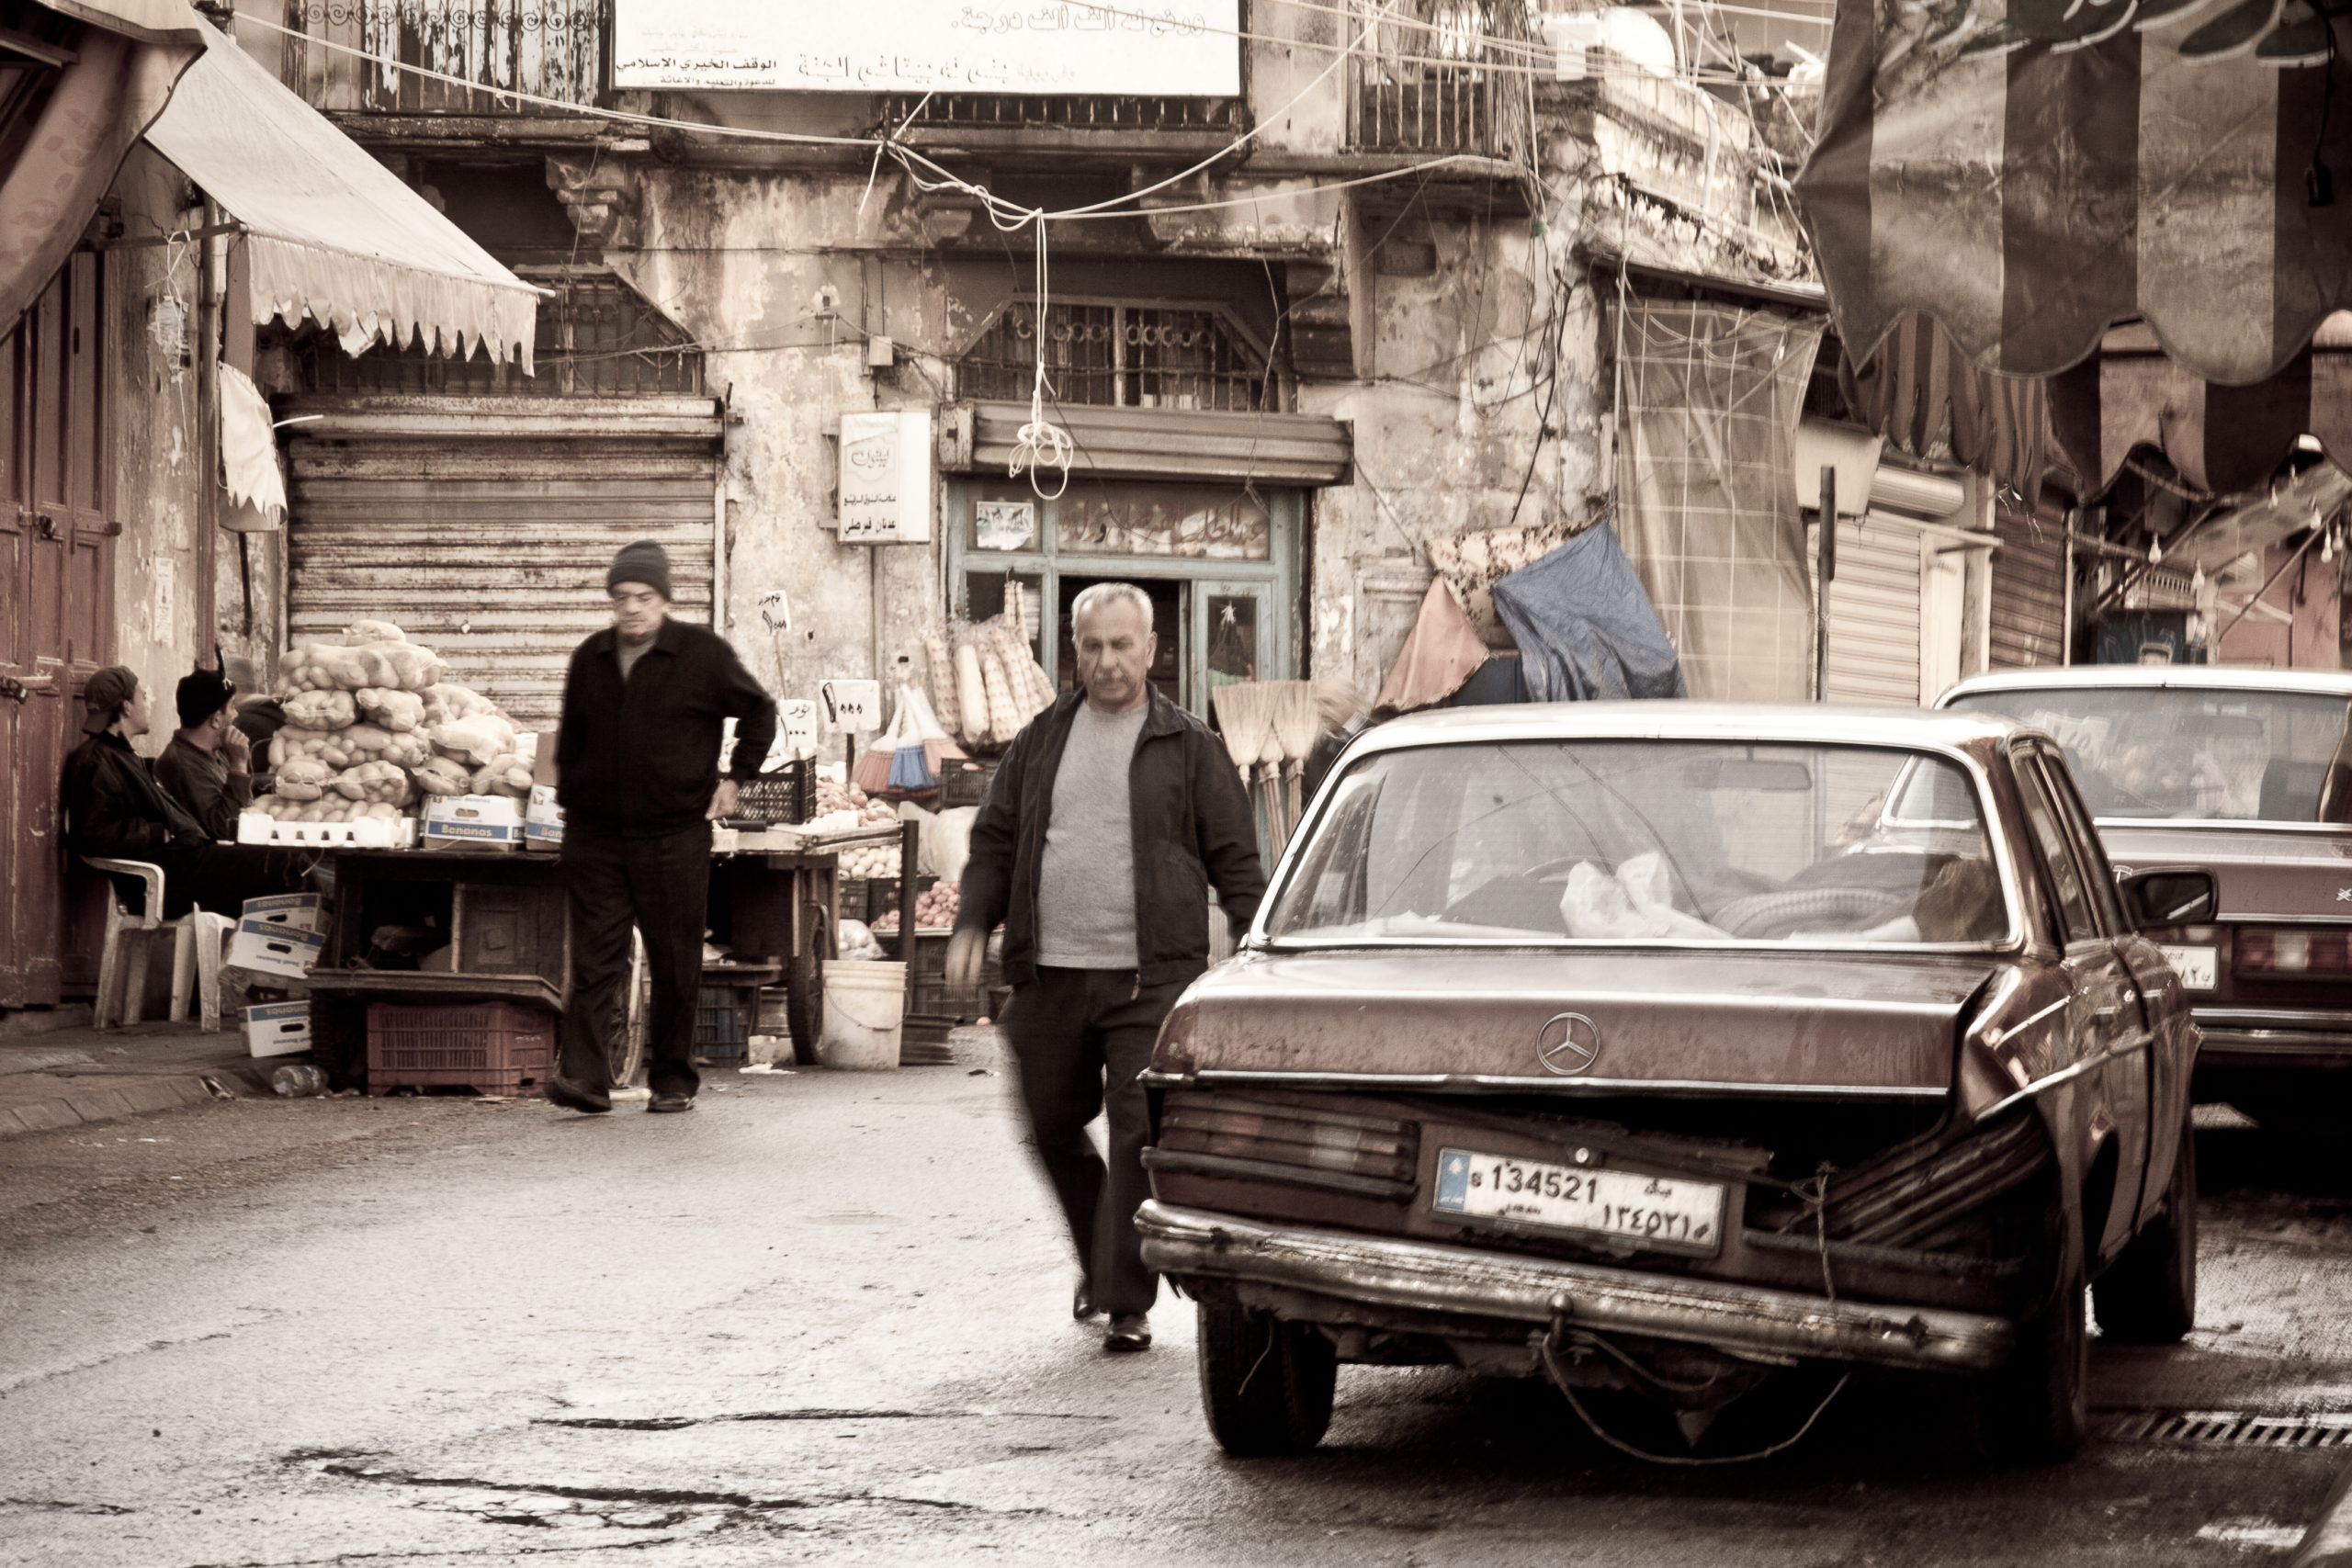 Libanesische Demonstrationen – ein Staat im Umbruch 1